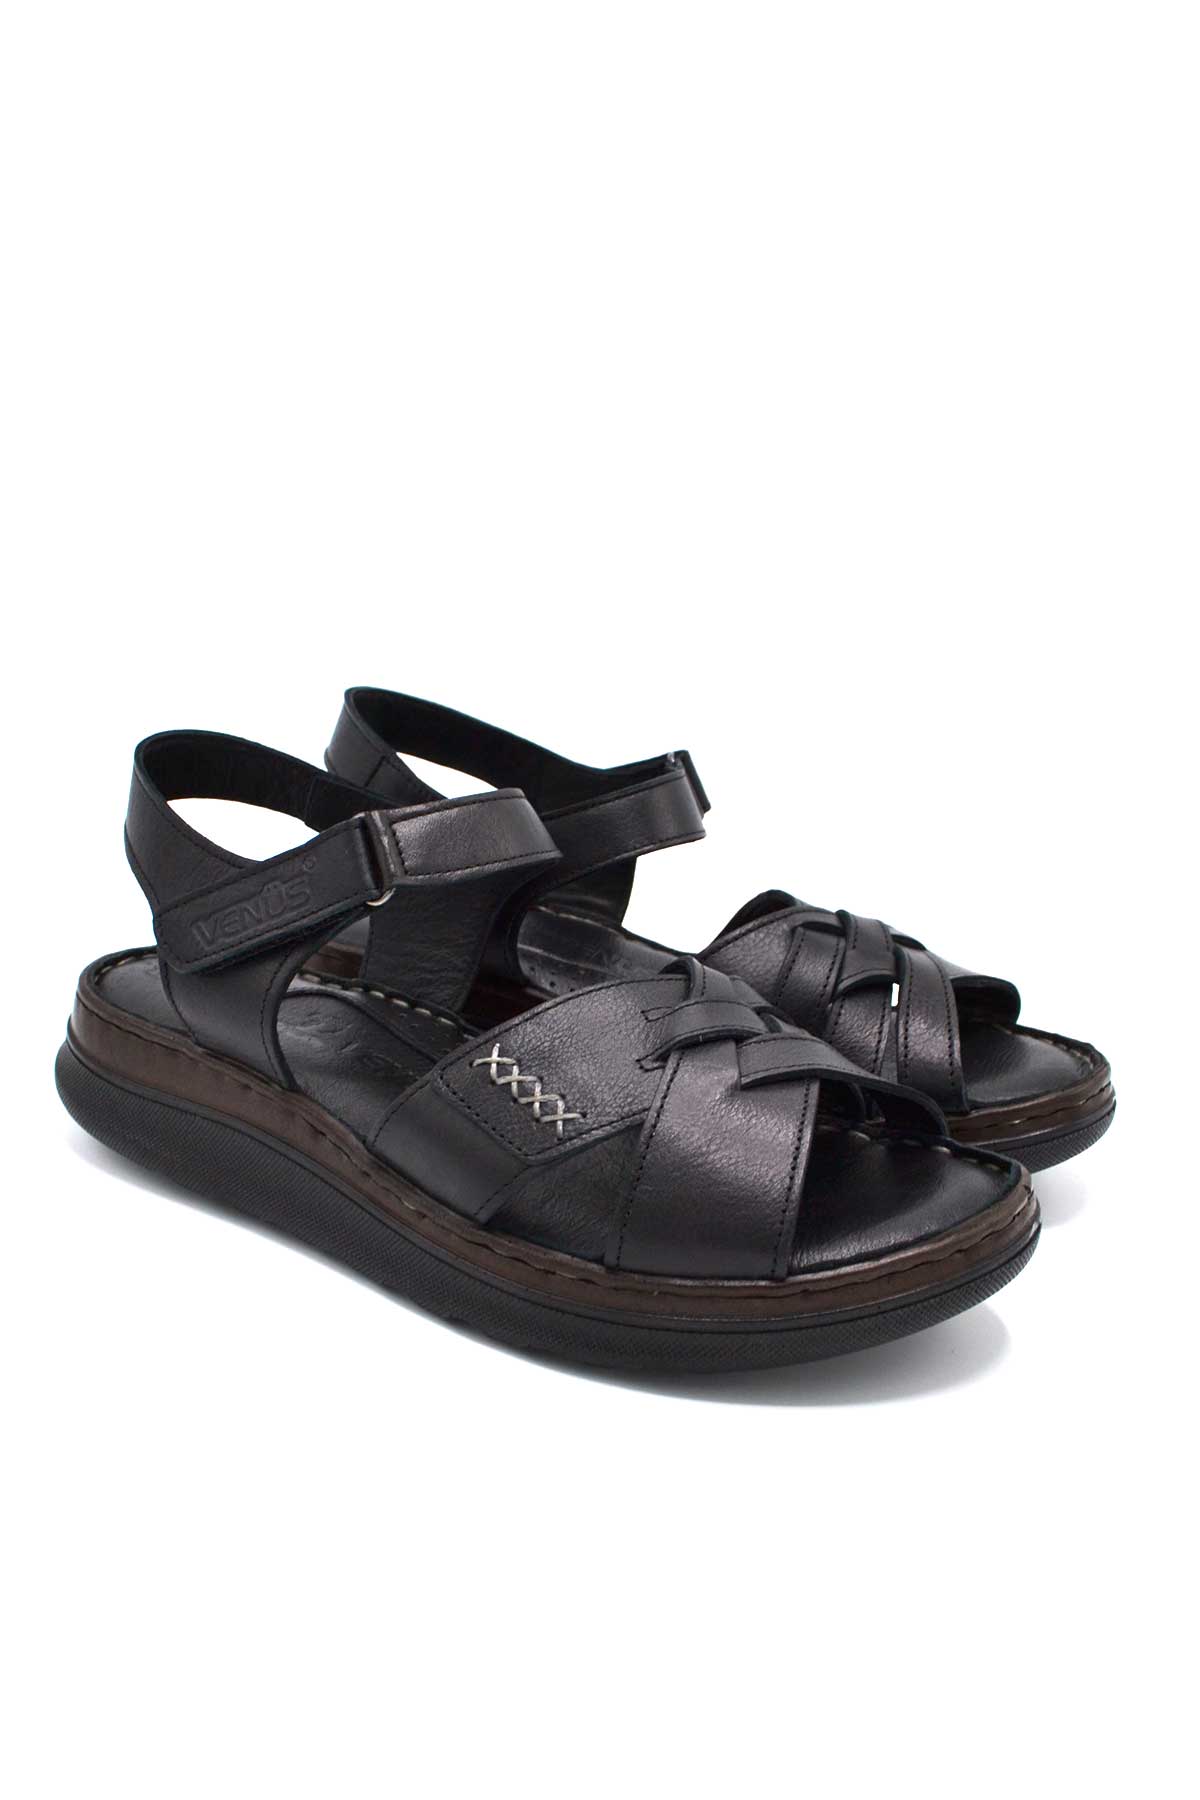 Kadın Comfort Deri Sandalet Siyah 22981709